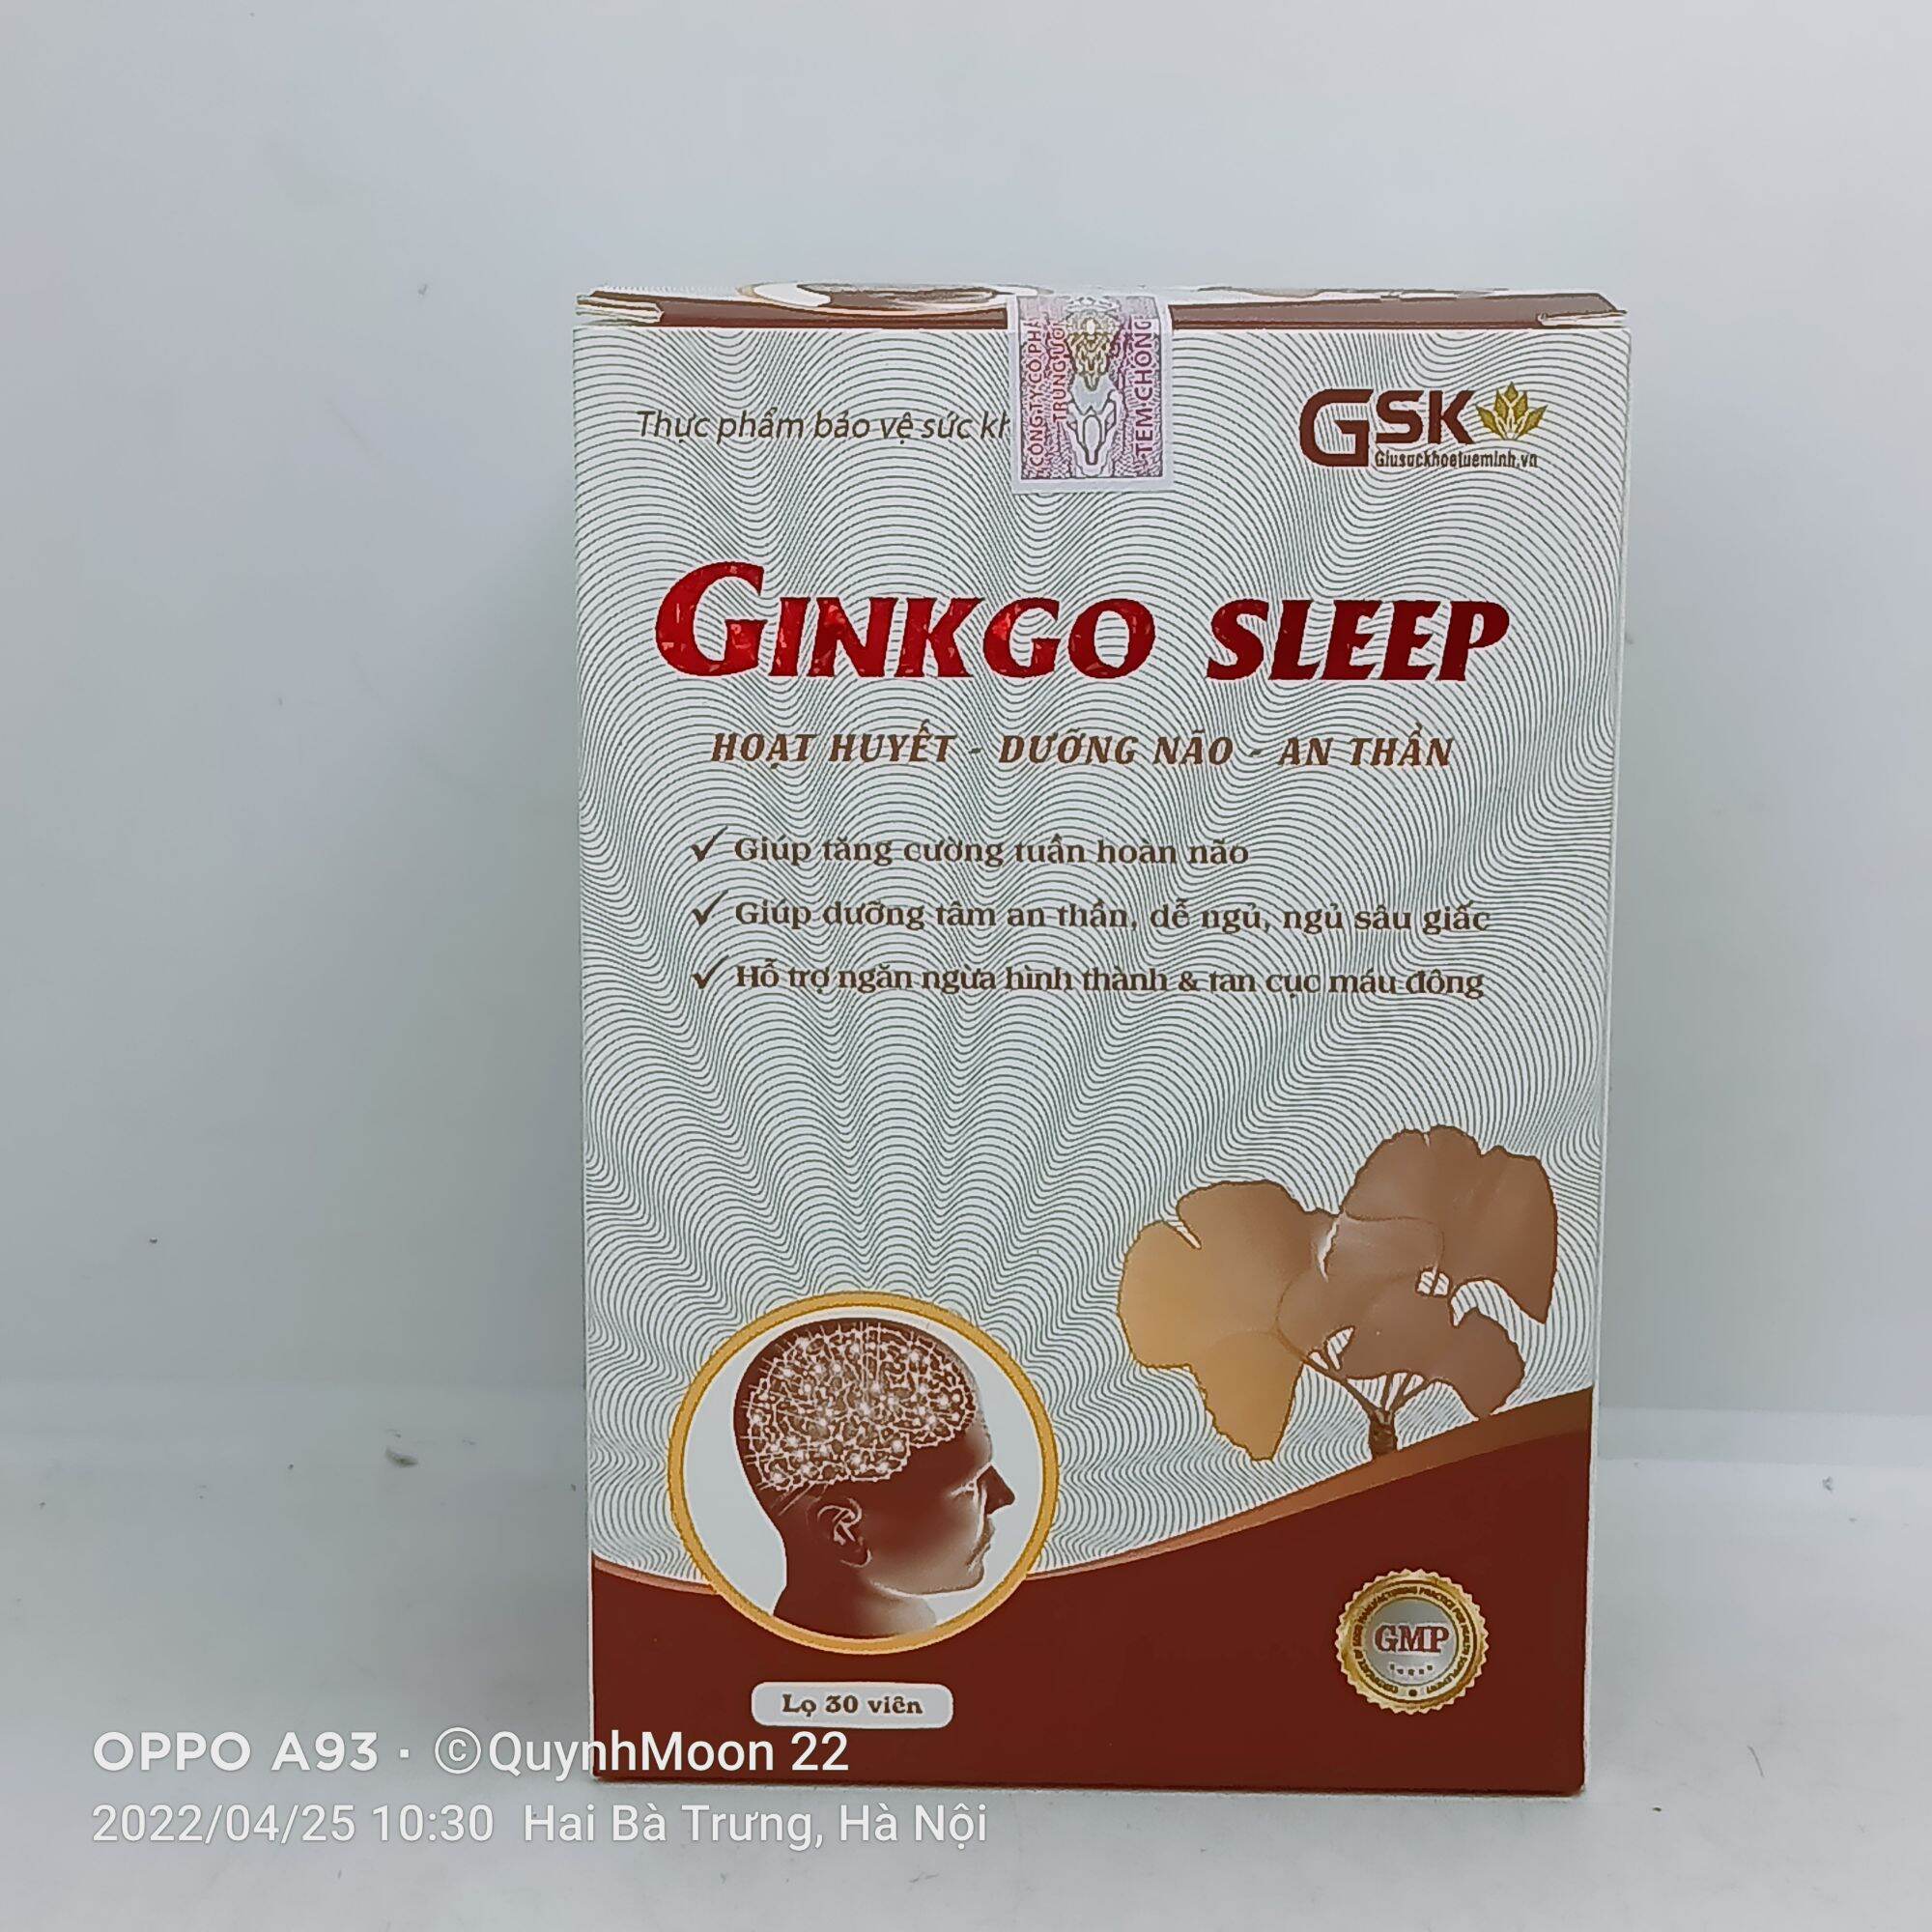 Ginkgo sleep lọ 30 viên hoạt huyết, dưỡng não, an thần